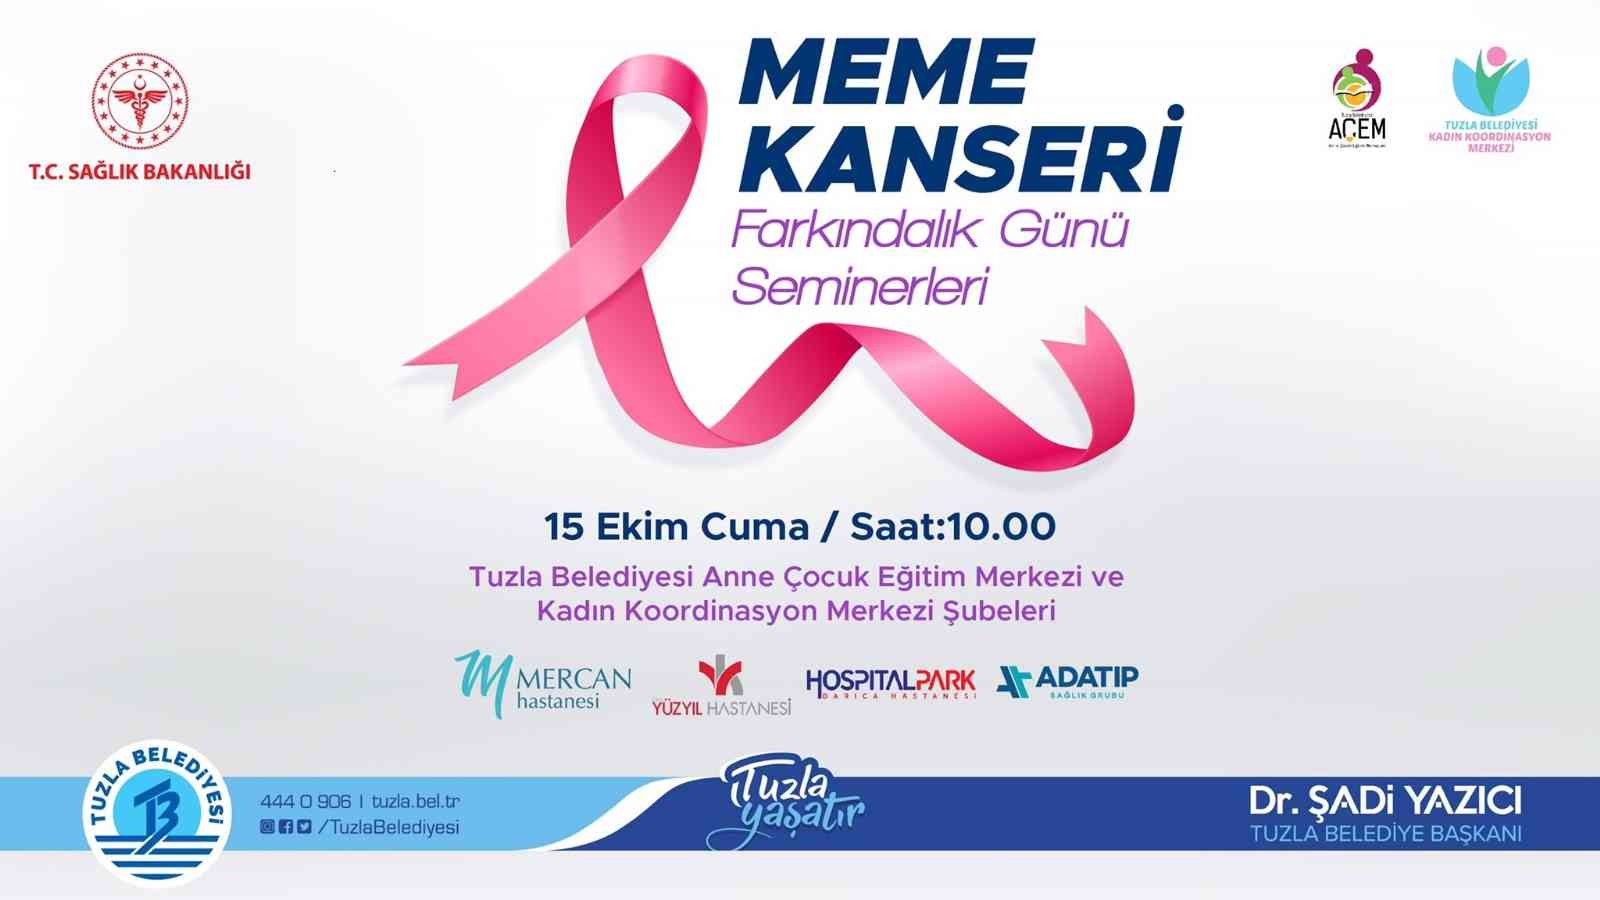 Tuzla Belediyesi’nin düzenlediği meme kanseri farkındalık seminerleri başlıyor #istanbul